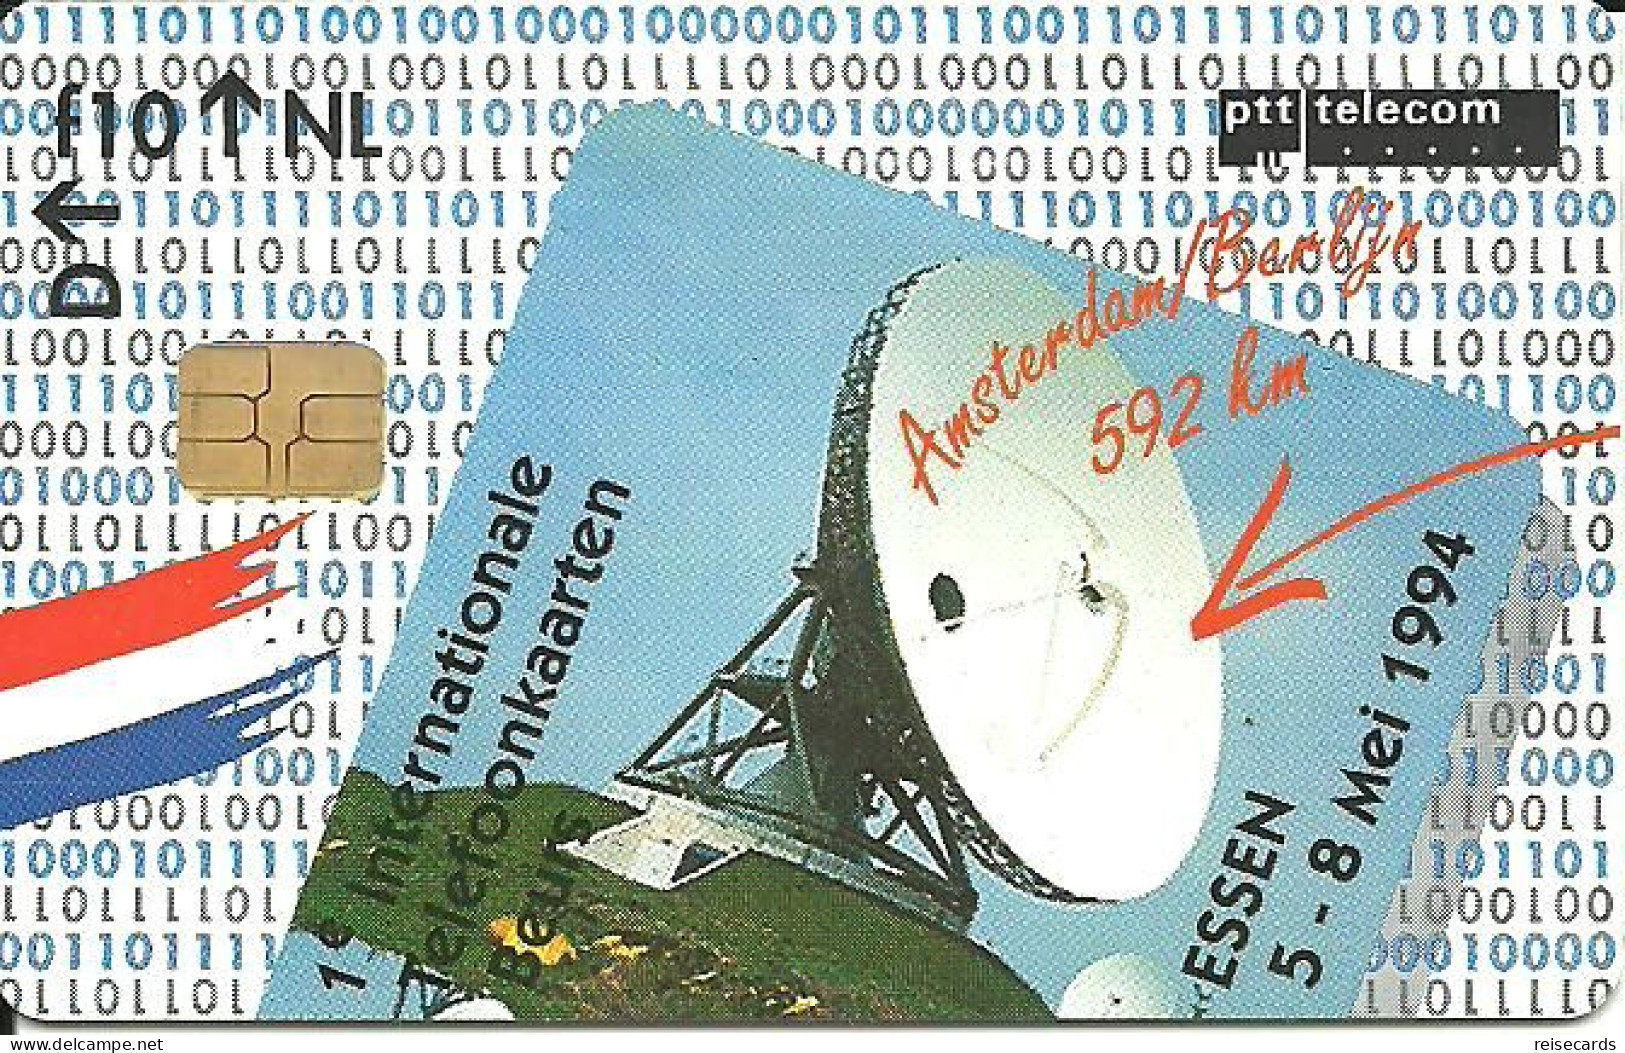 Netherlands: Ptt Telecom - 1994 1. Internationale Telefoonkaarten Beurs 94 Essen. Mint - Openbaar